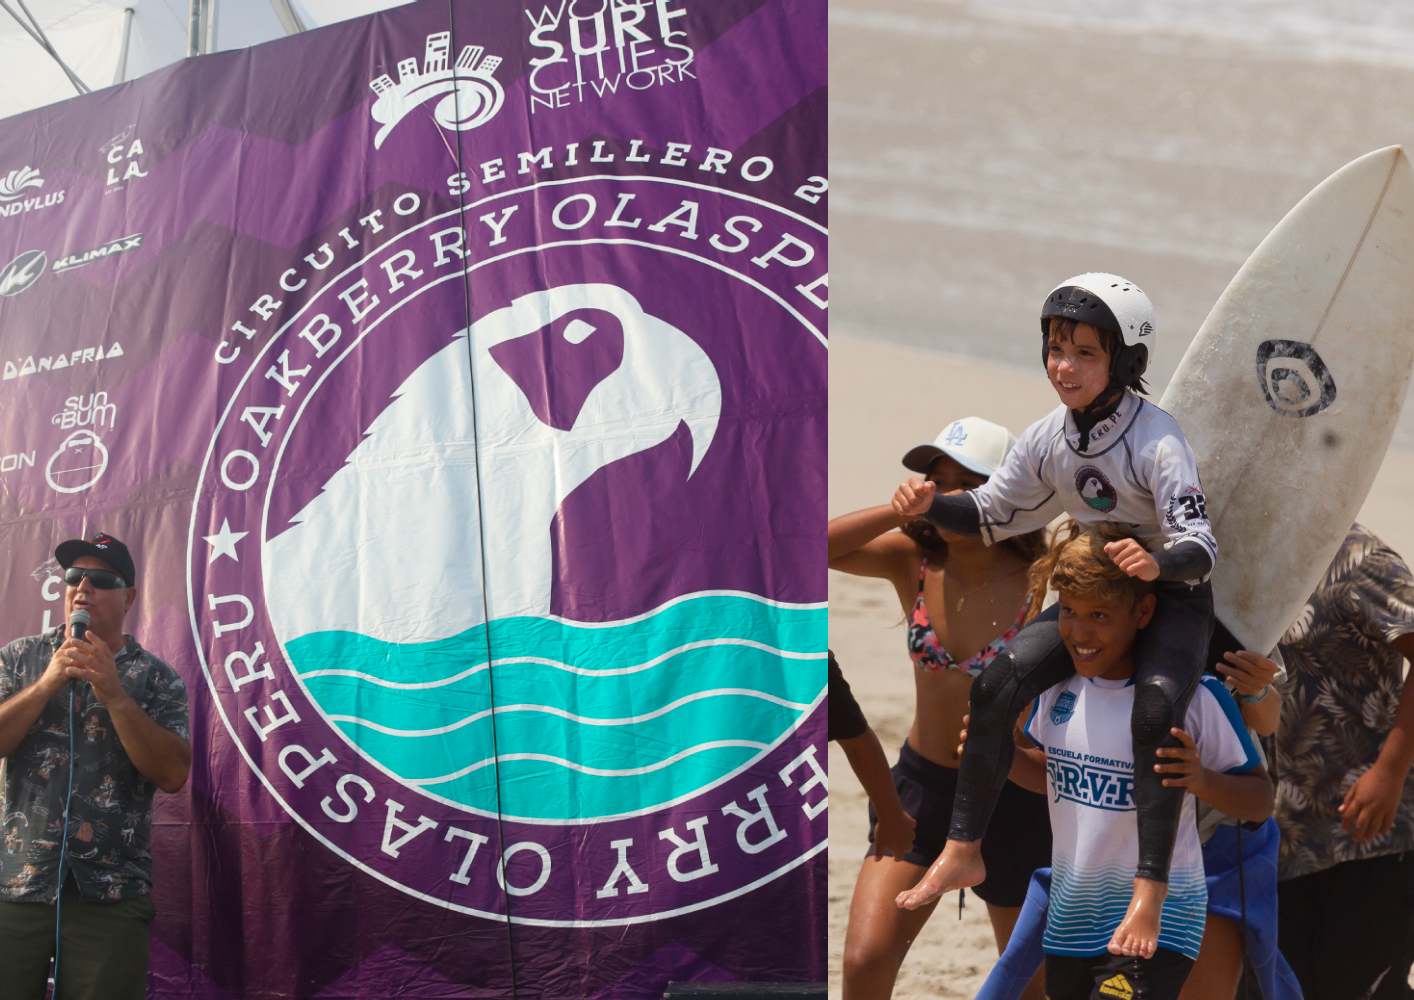 Noventa talentosos surfistas peruanos a la espera de la fecha final del Semillero Oakberry este domingo 